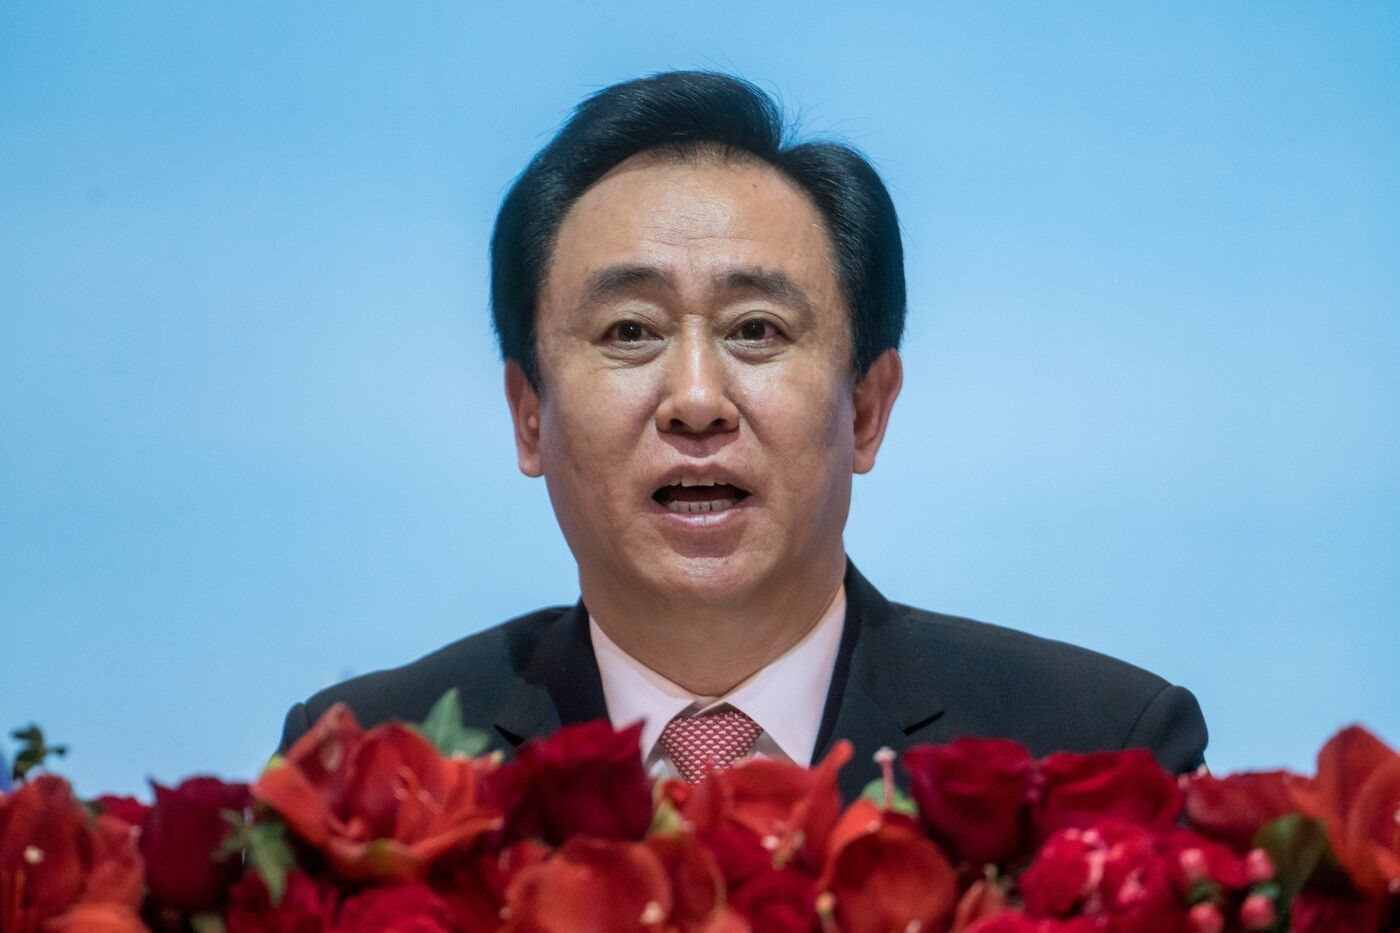 ‘Chuyện lạ’ ở Trung Quốc: Loạt ‘ông trùm’ bất động sản tưởng ‘ngã ngựa’ nhưng vẫn nhận hàng tỷ USD cổ tức và tiếp tục lãnh đạo công ty - Ảnh 1.